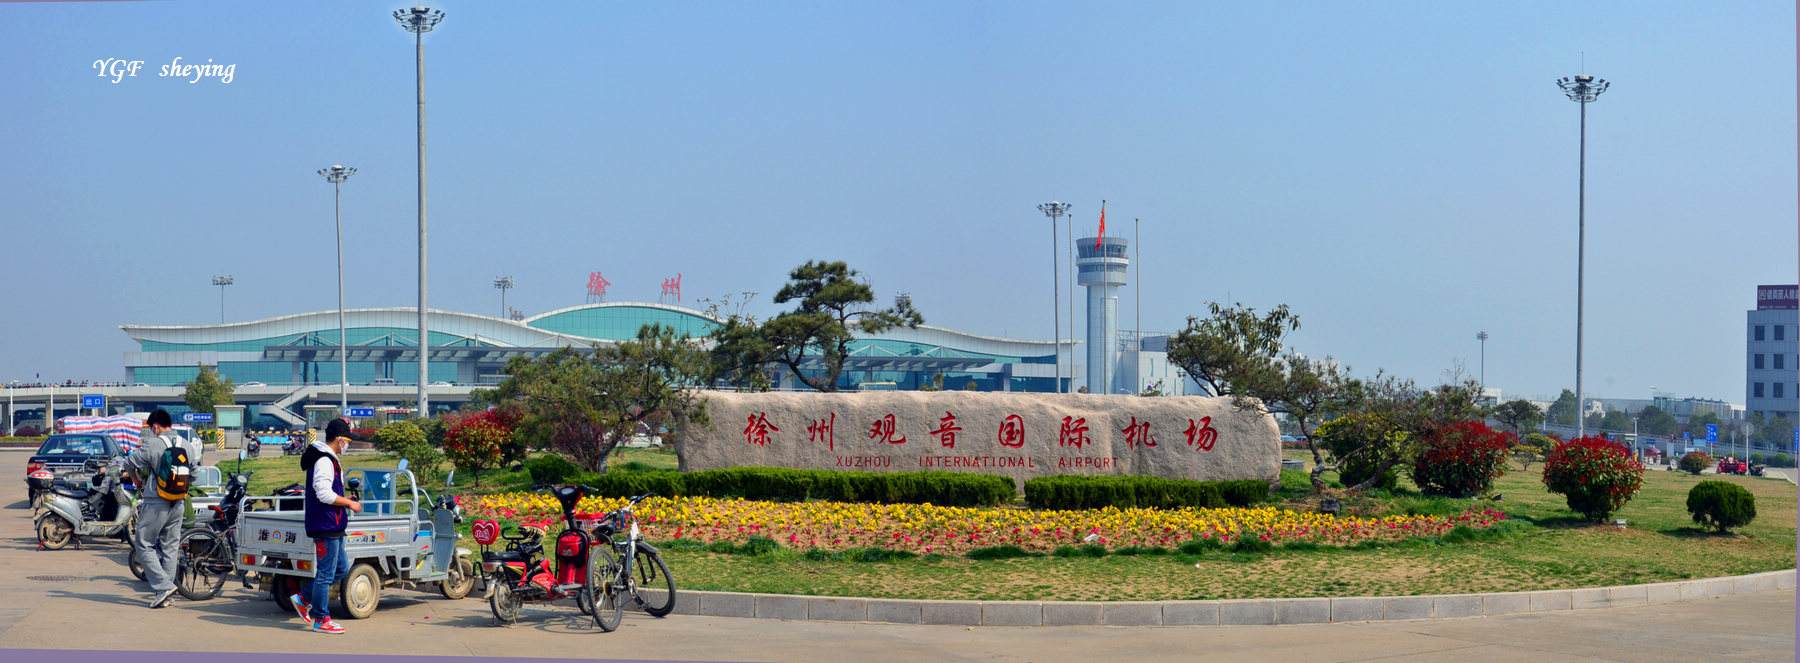 江苏徐州空港经济开发区